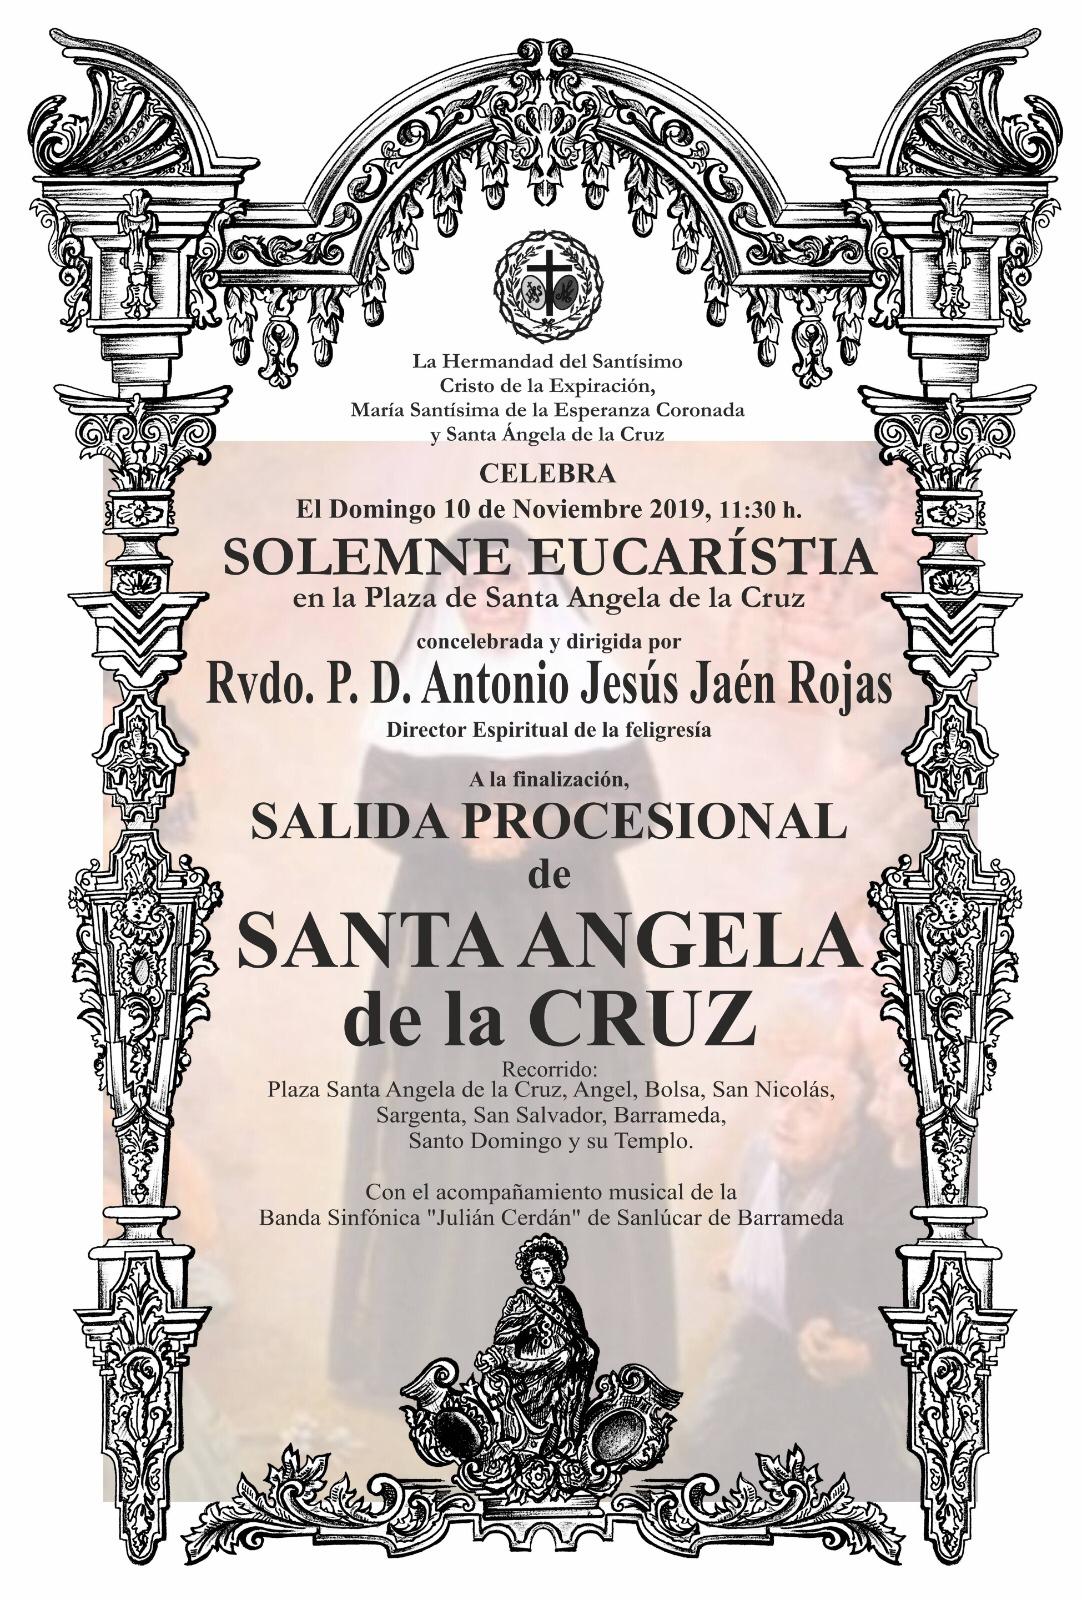 Misa de Campaña y Salida Procesional de Santa Angela de la Cruz